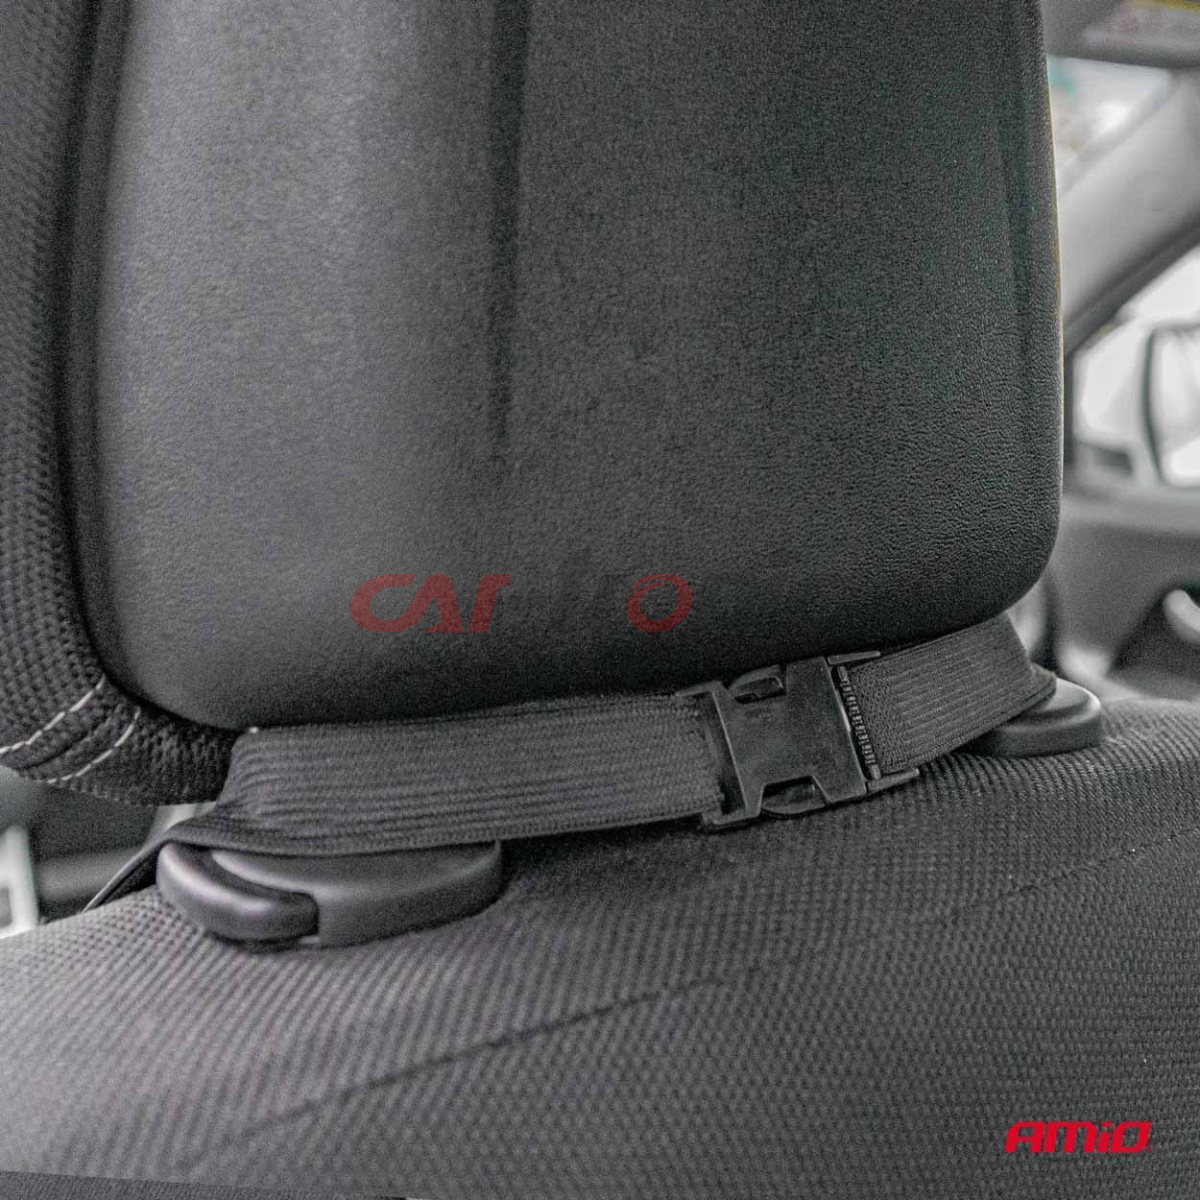 Mata grzewcza podgrzewana na fotel siedzenie do samochodu 12V AMIO-03624